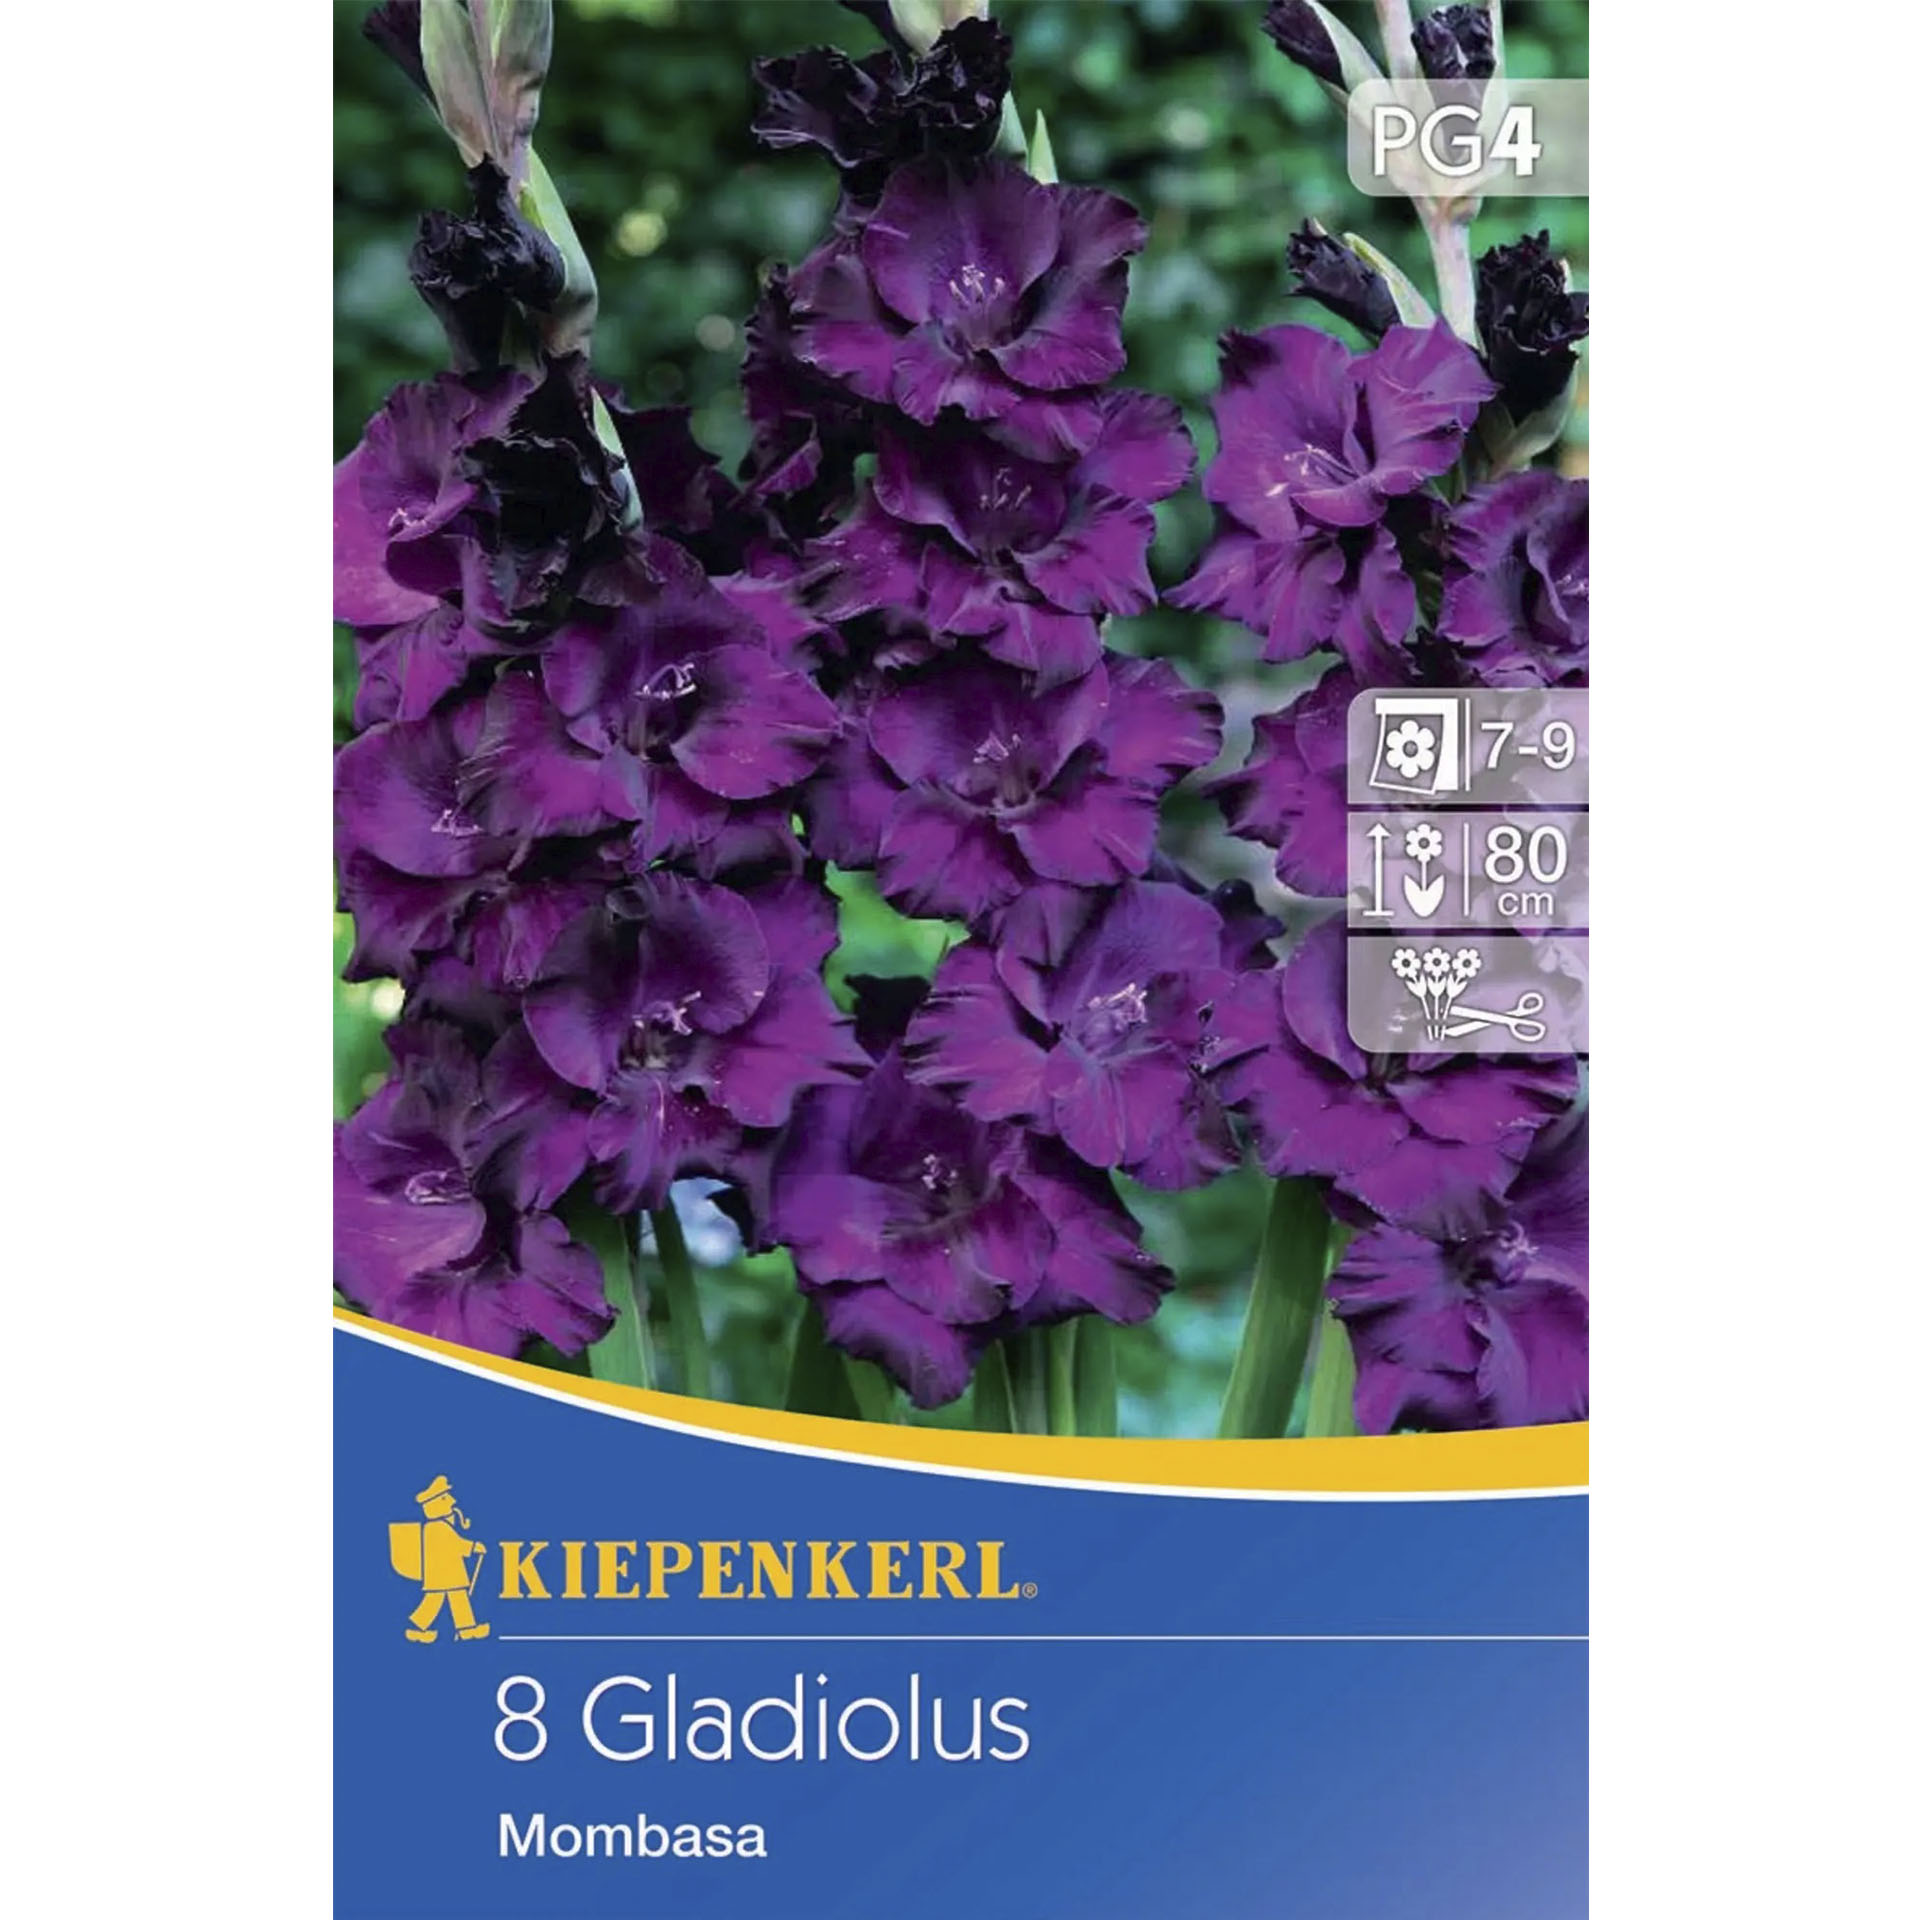 Beutel mit Bild Gladiole auf Pappdeckel